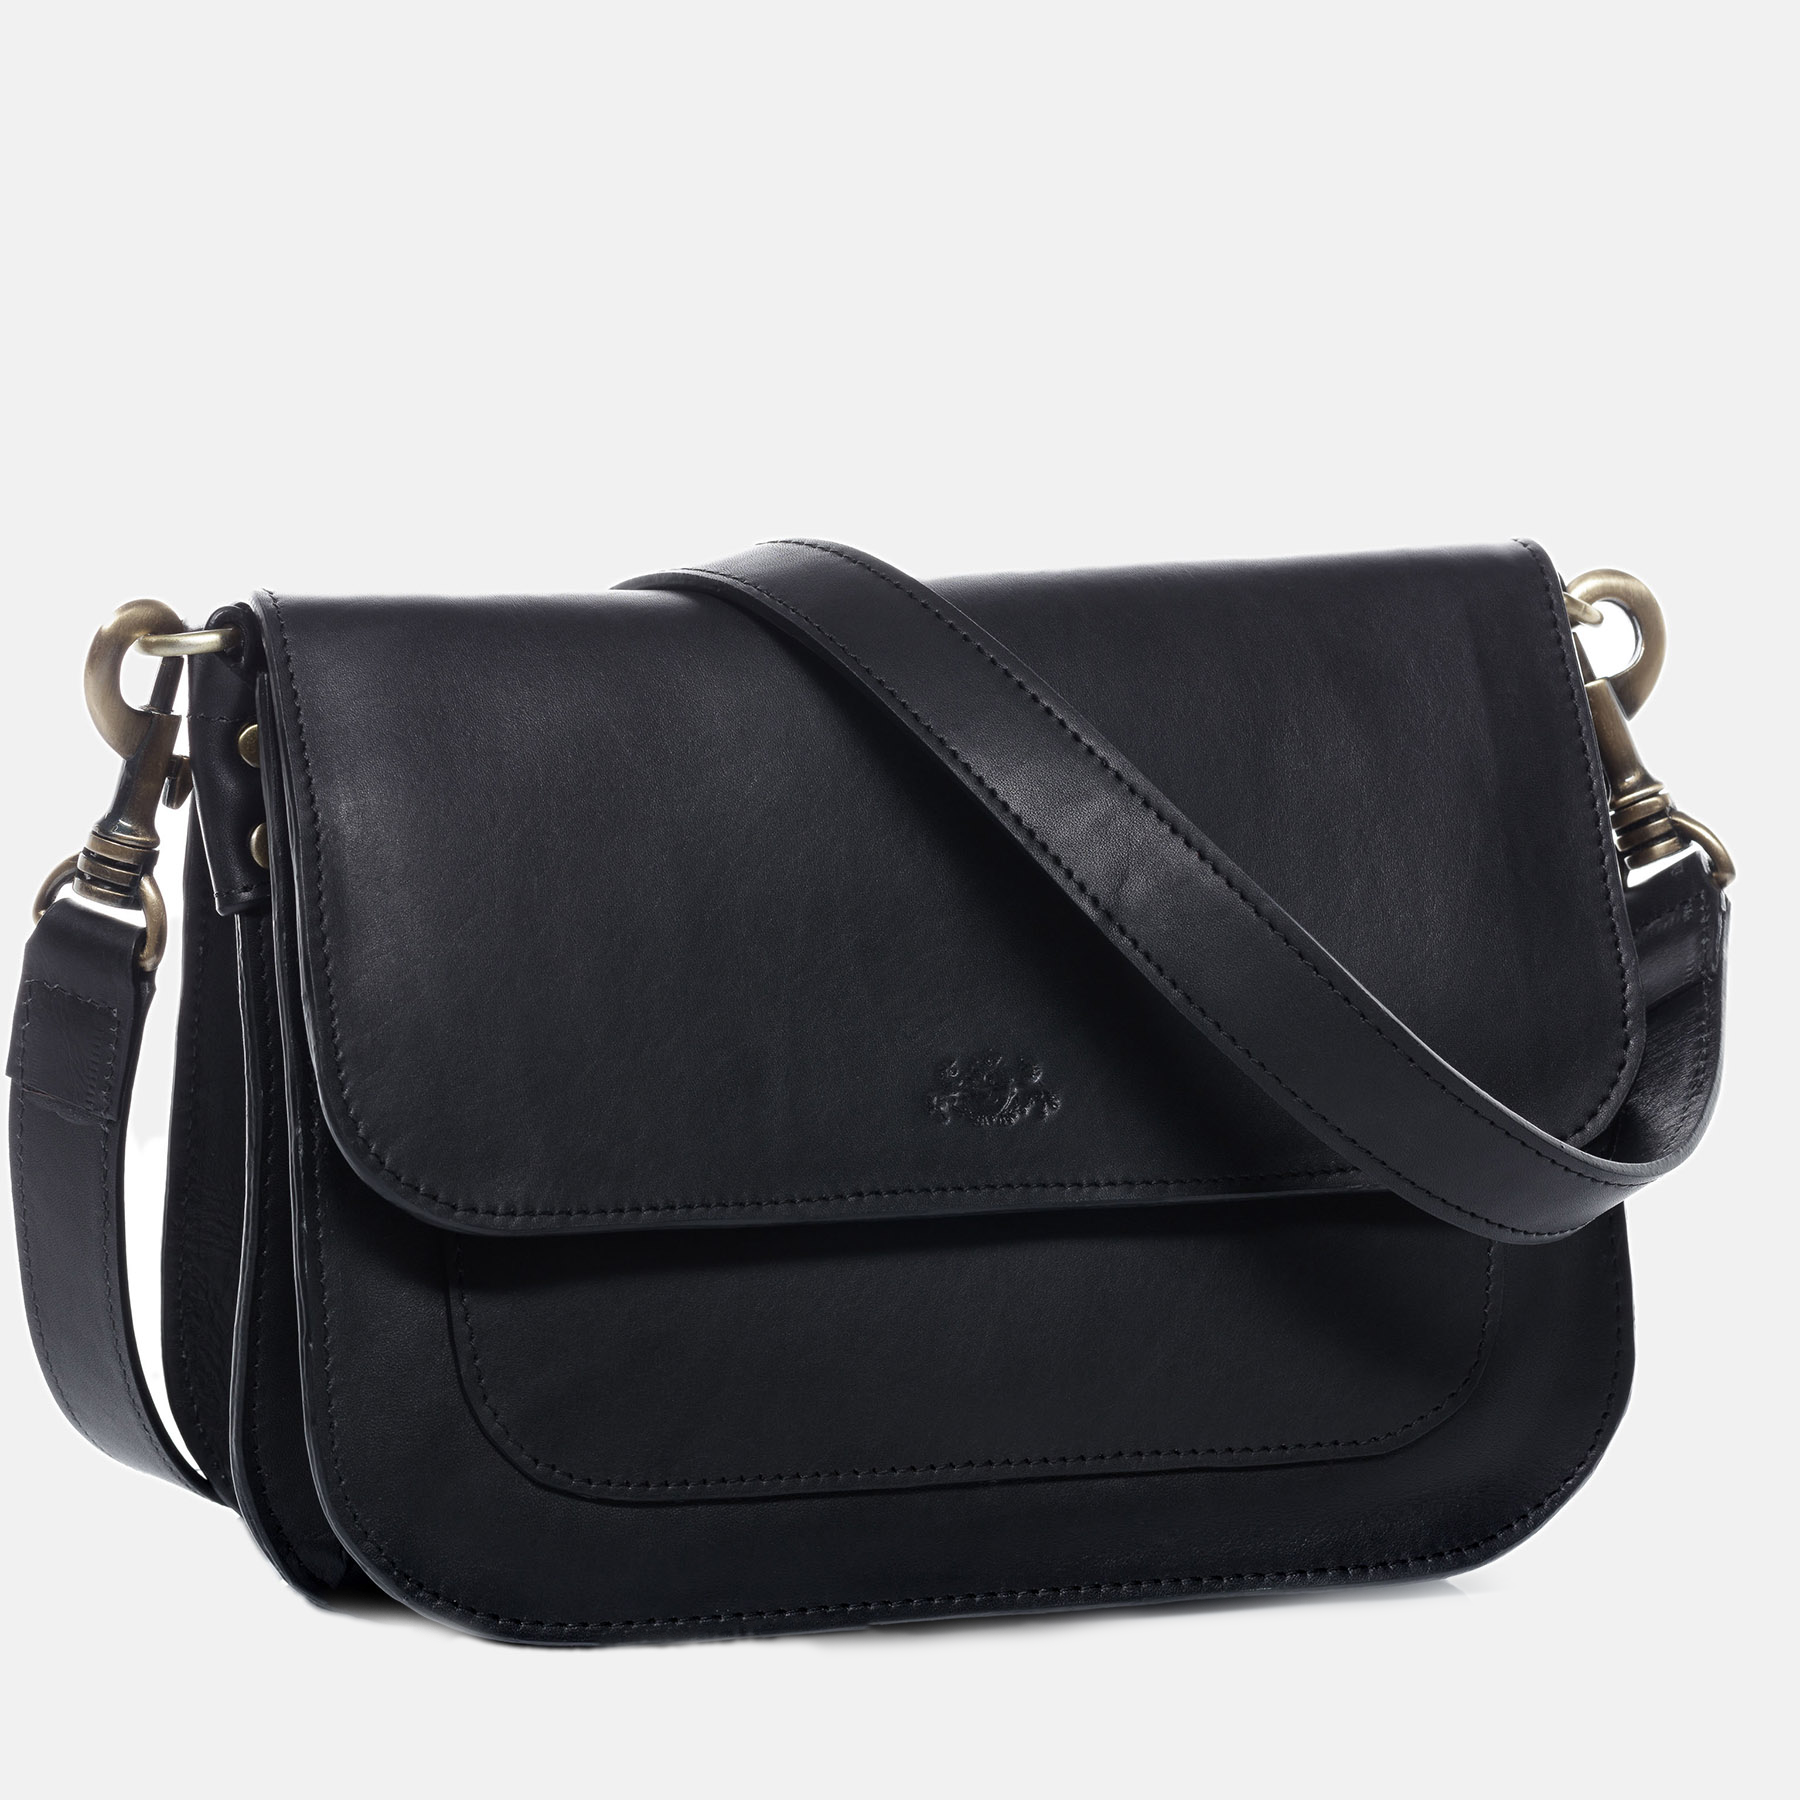 Shoulder bag FRAN smooth leather black